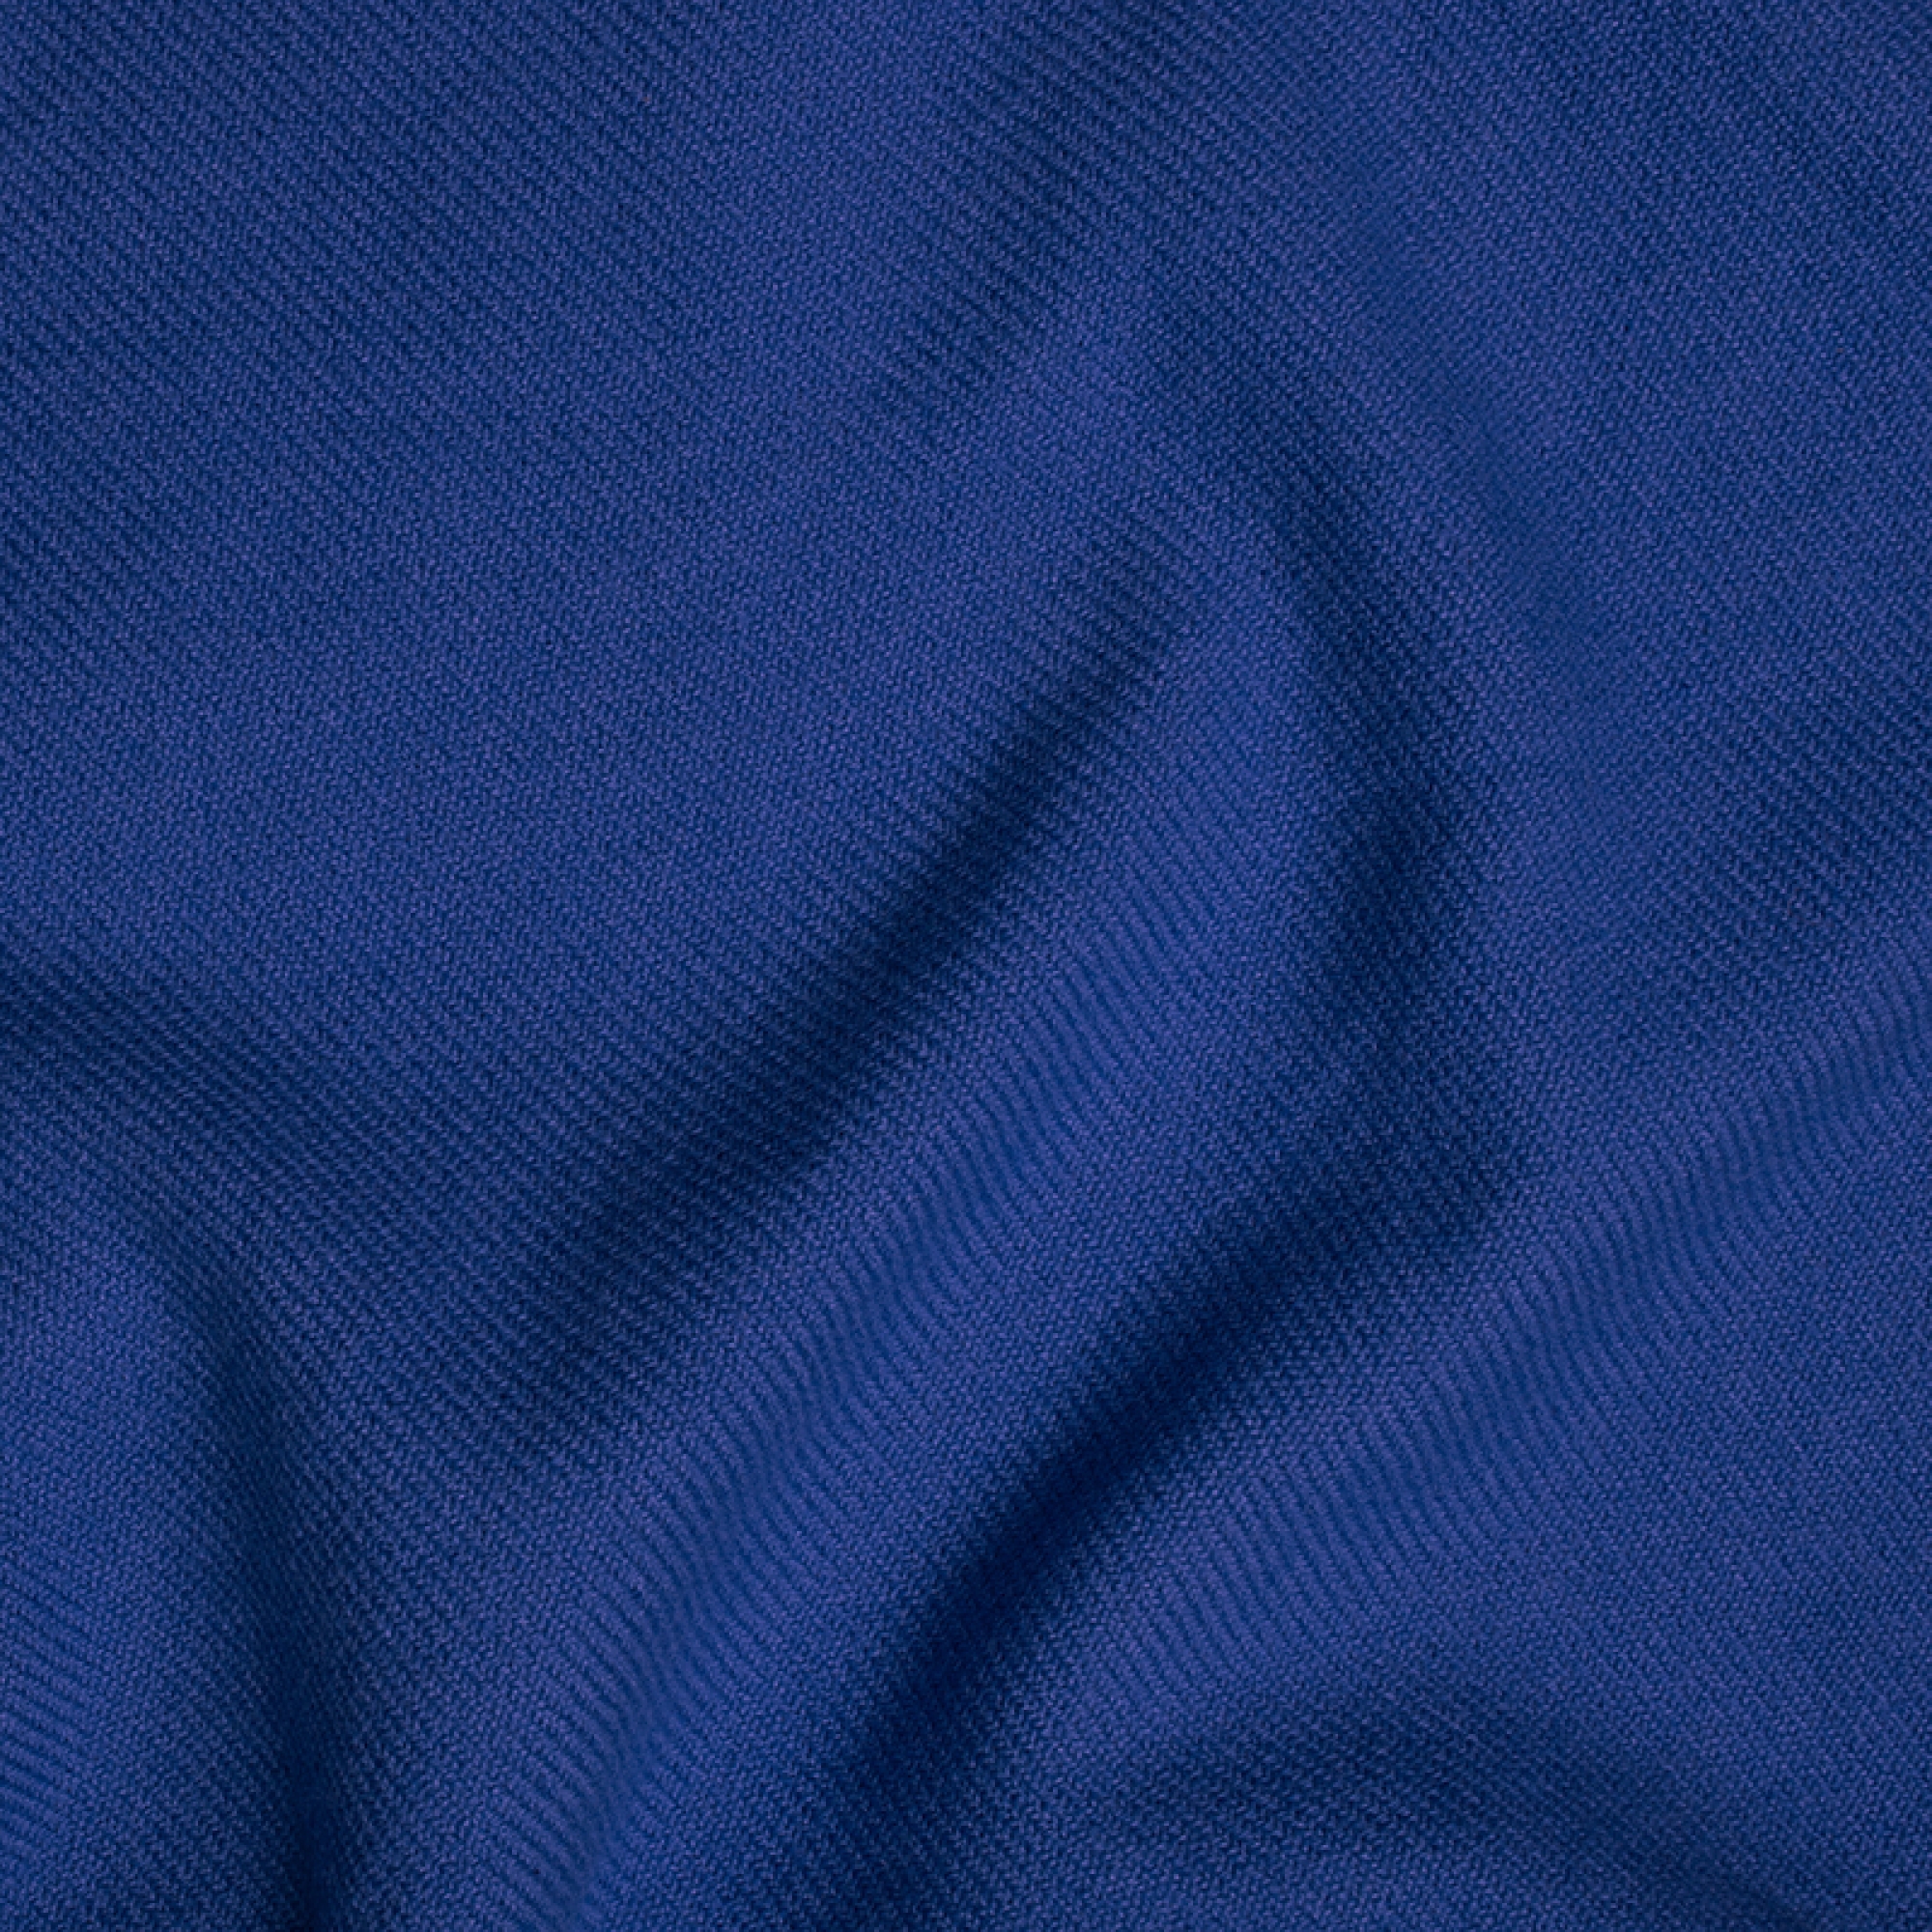 Cachemire accessoires couvertures plaids toodoo plain l 220 x 220 bleuet 220x220cm